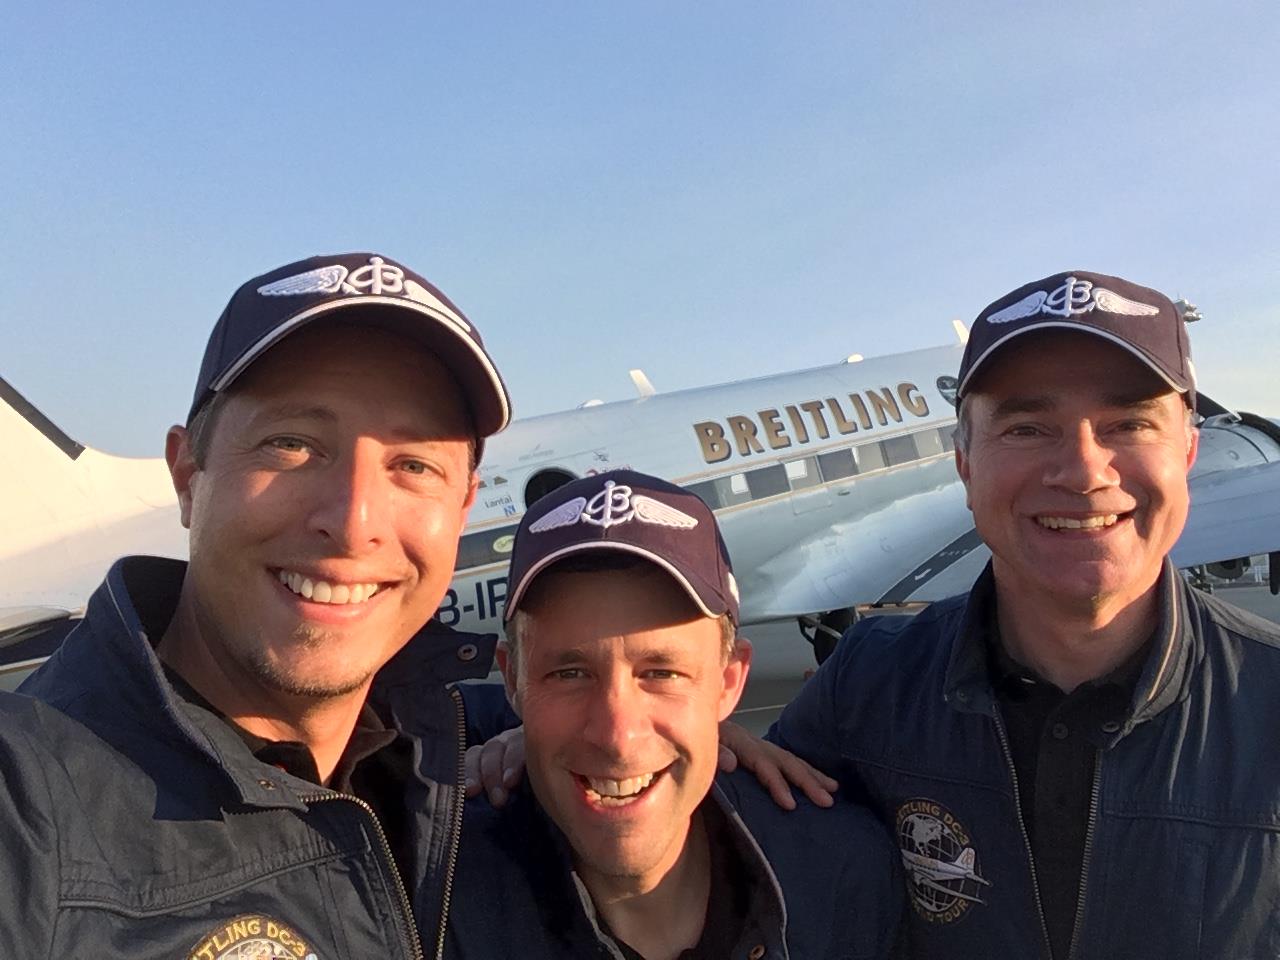 Raphaël Favre, Paul Bazeley et Francisco Agullo affichent leur joie après l'atterrissage au terme du plus long vol de leur tour du monde à bord du DC-3 Breitling.